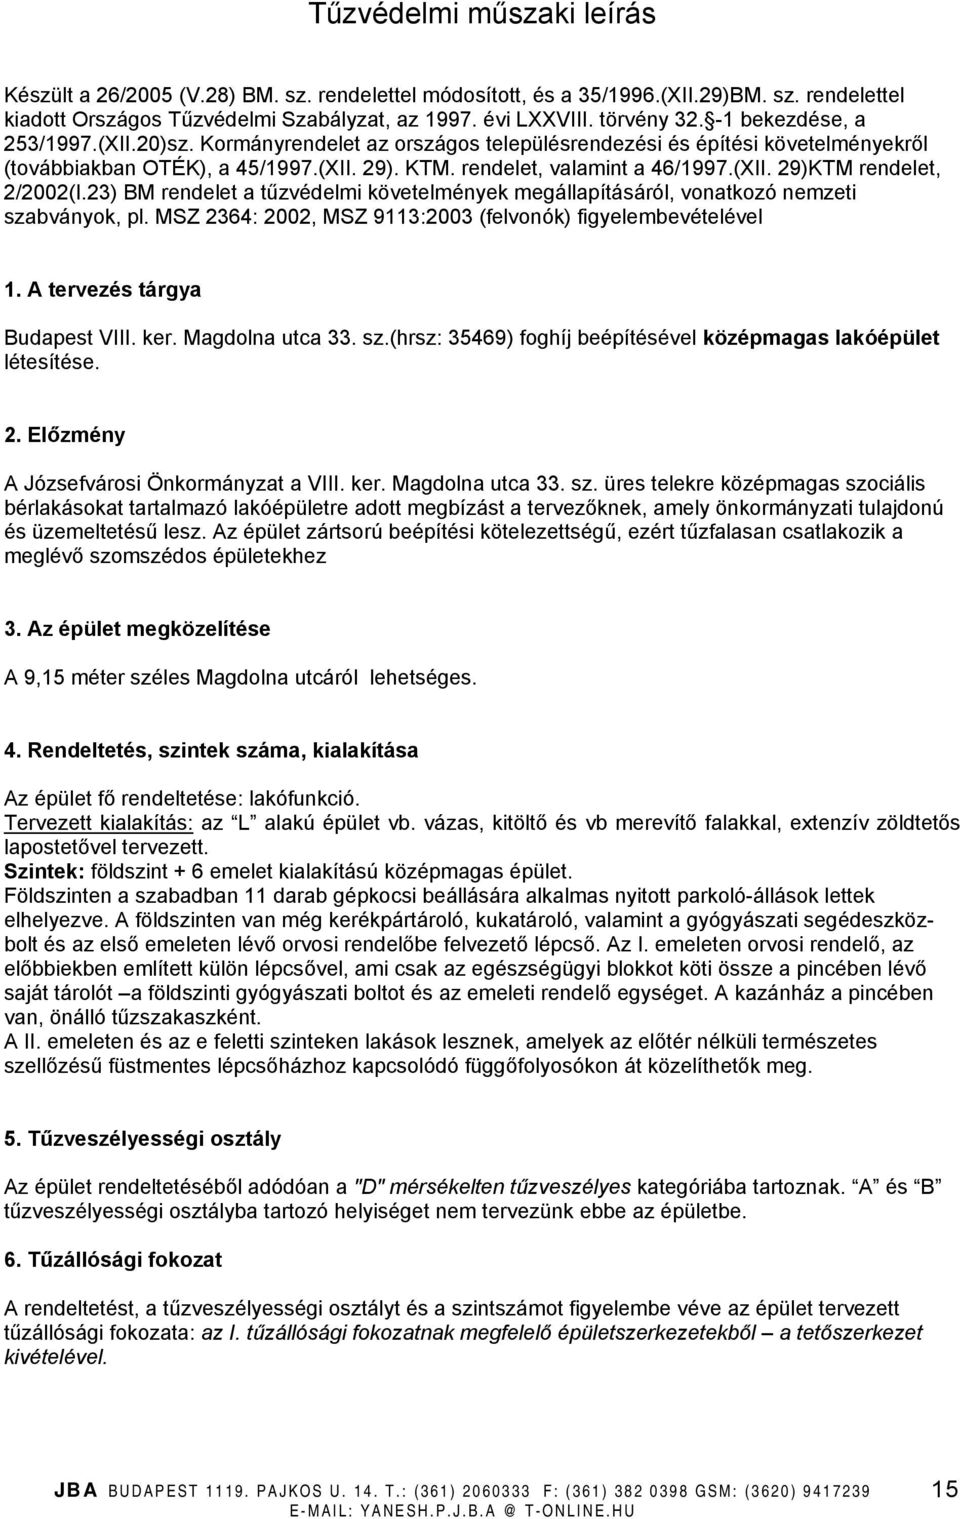 23) BM rendelet a tűzvédelmi követelmények megállapításáról, vonatkozó nemzeti szabványok, pl. MSZ 2364: 2002, MSZ 9113:2003 (felvonók) figyelembevételével 1. A tervezés tárgya Budapest VIII. ker.